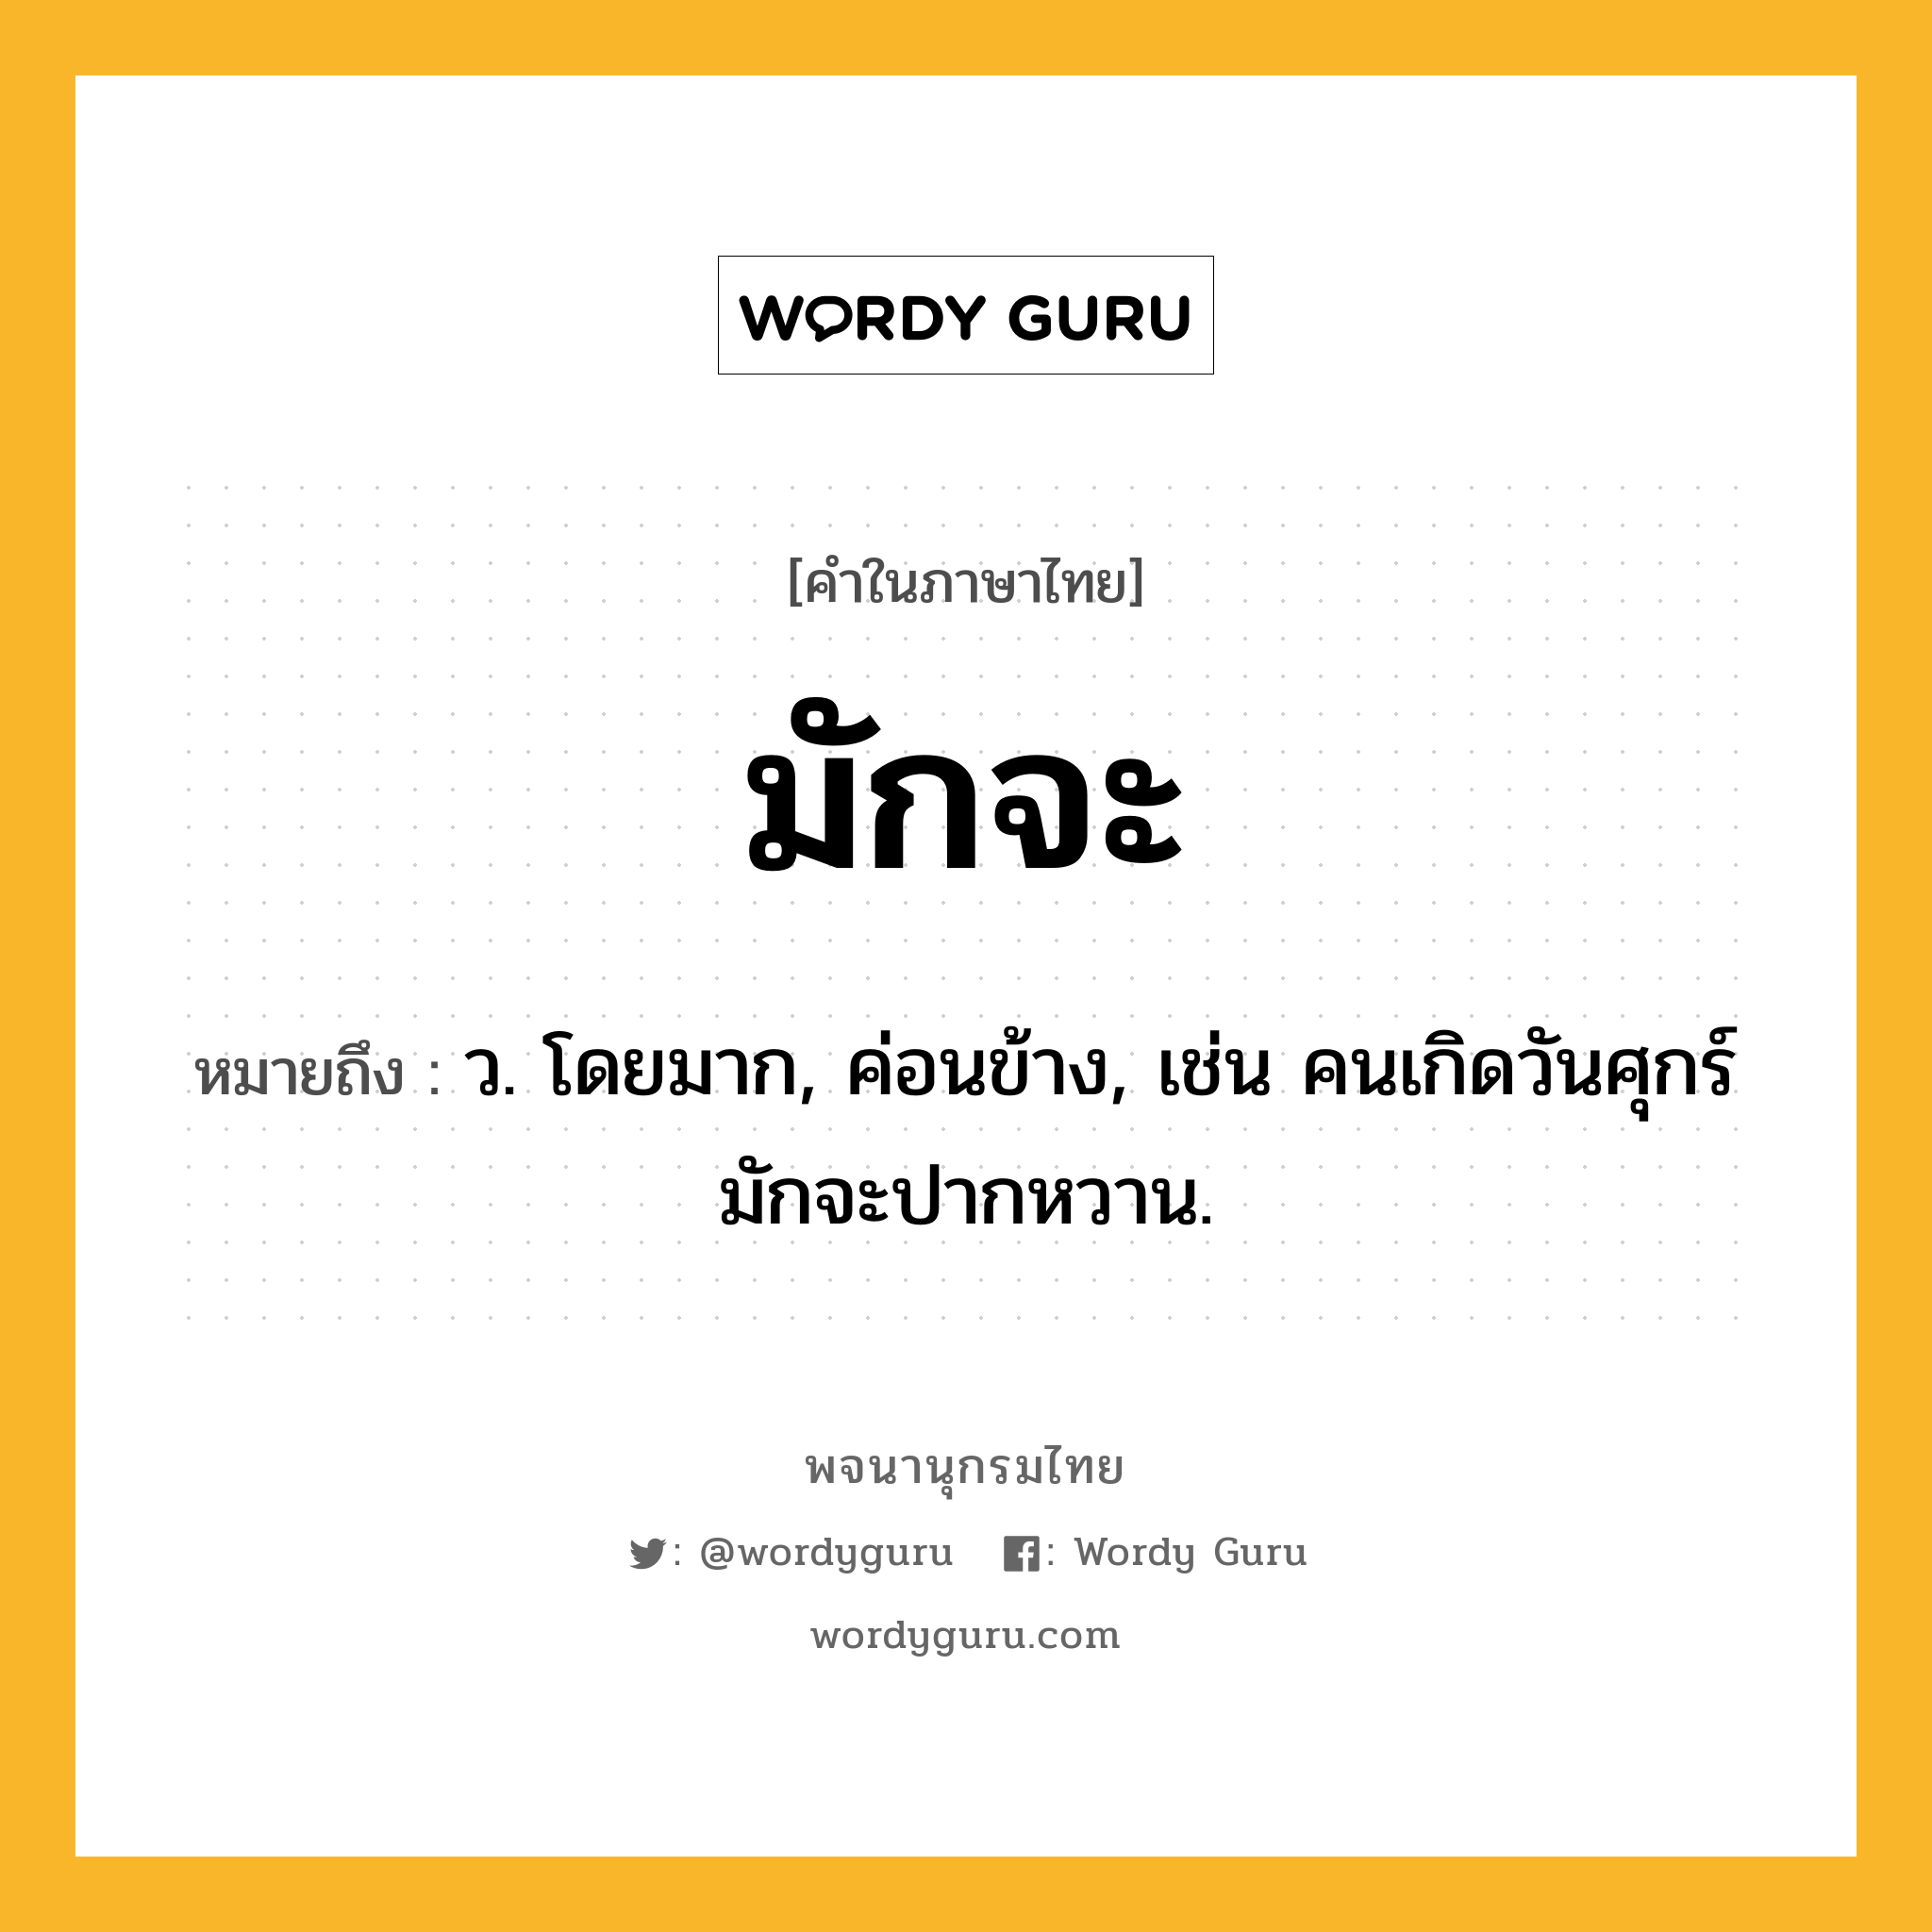 มักจะ หมายถึงอะไร?, คำในภาษาไทย มักจะ หมายถึง ว. โดยมาก, ค่อนข้าง, เช่น คนเกิดวันศุกร์มักจะปากหวาน.